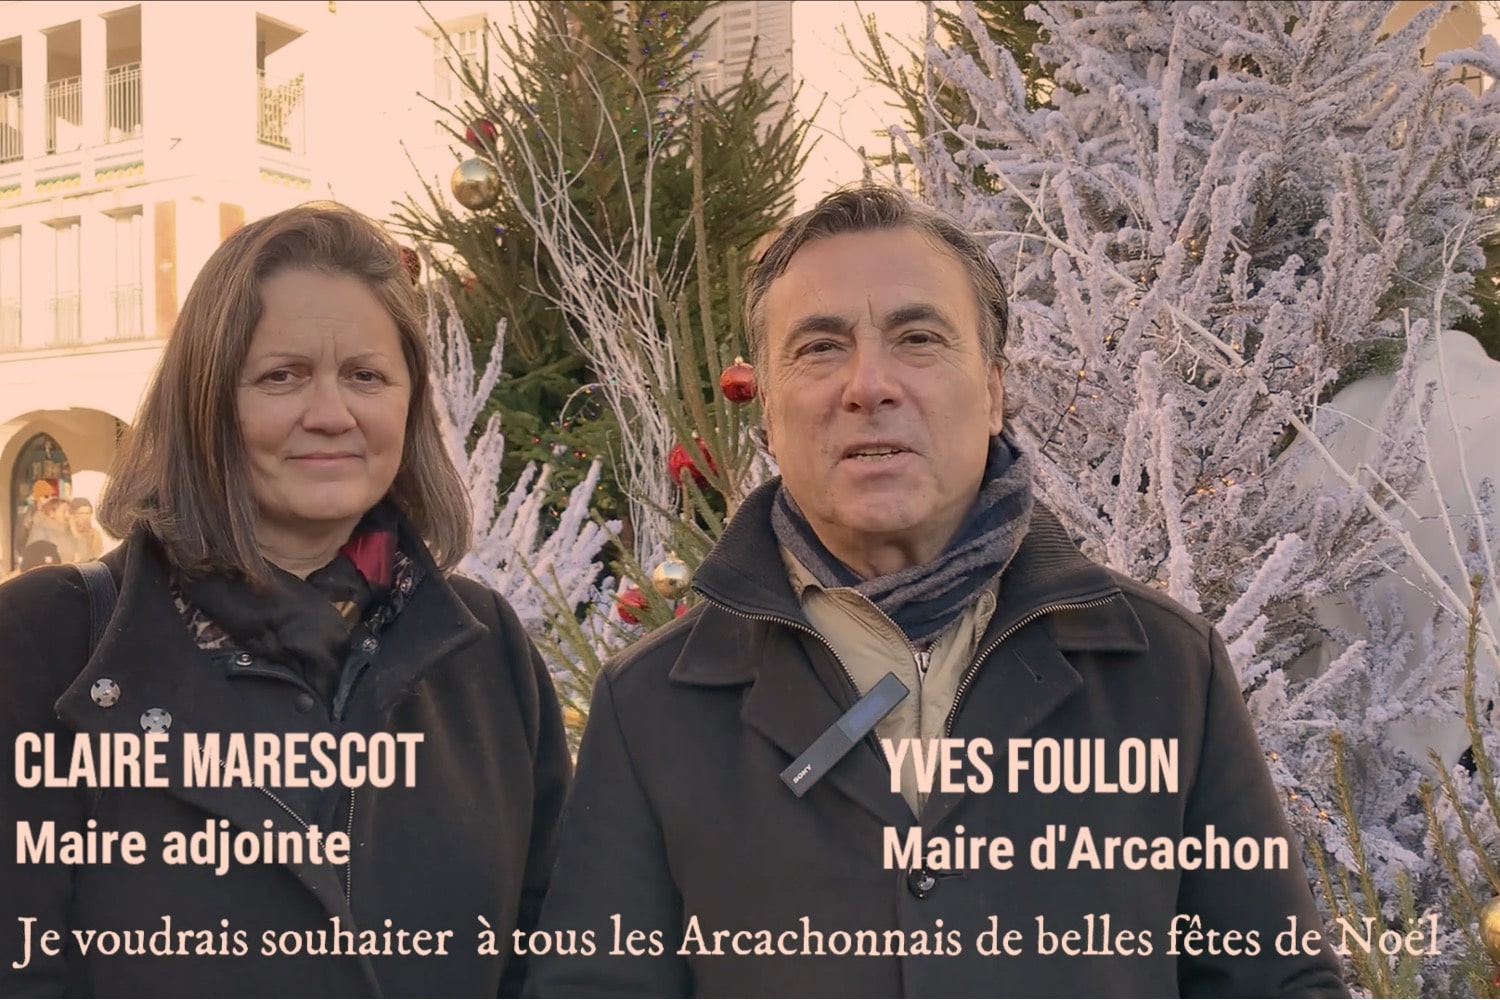 Yves Foulon Maire d’Arcachon vous souhaite de joyeuses fêtes de Noël